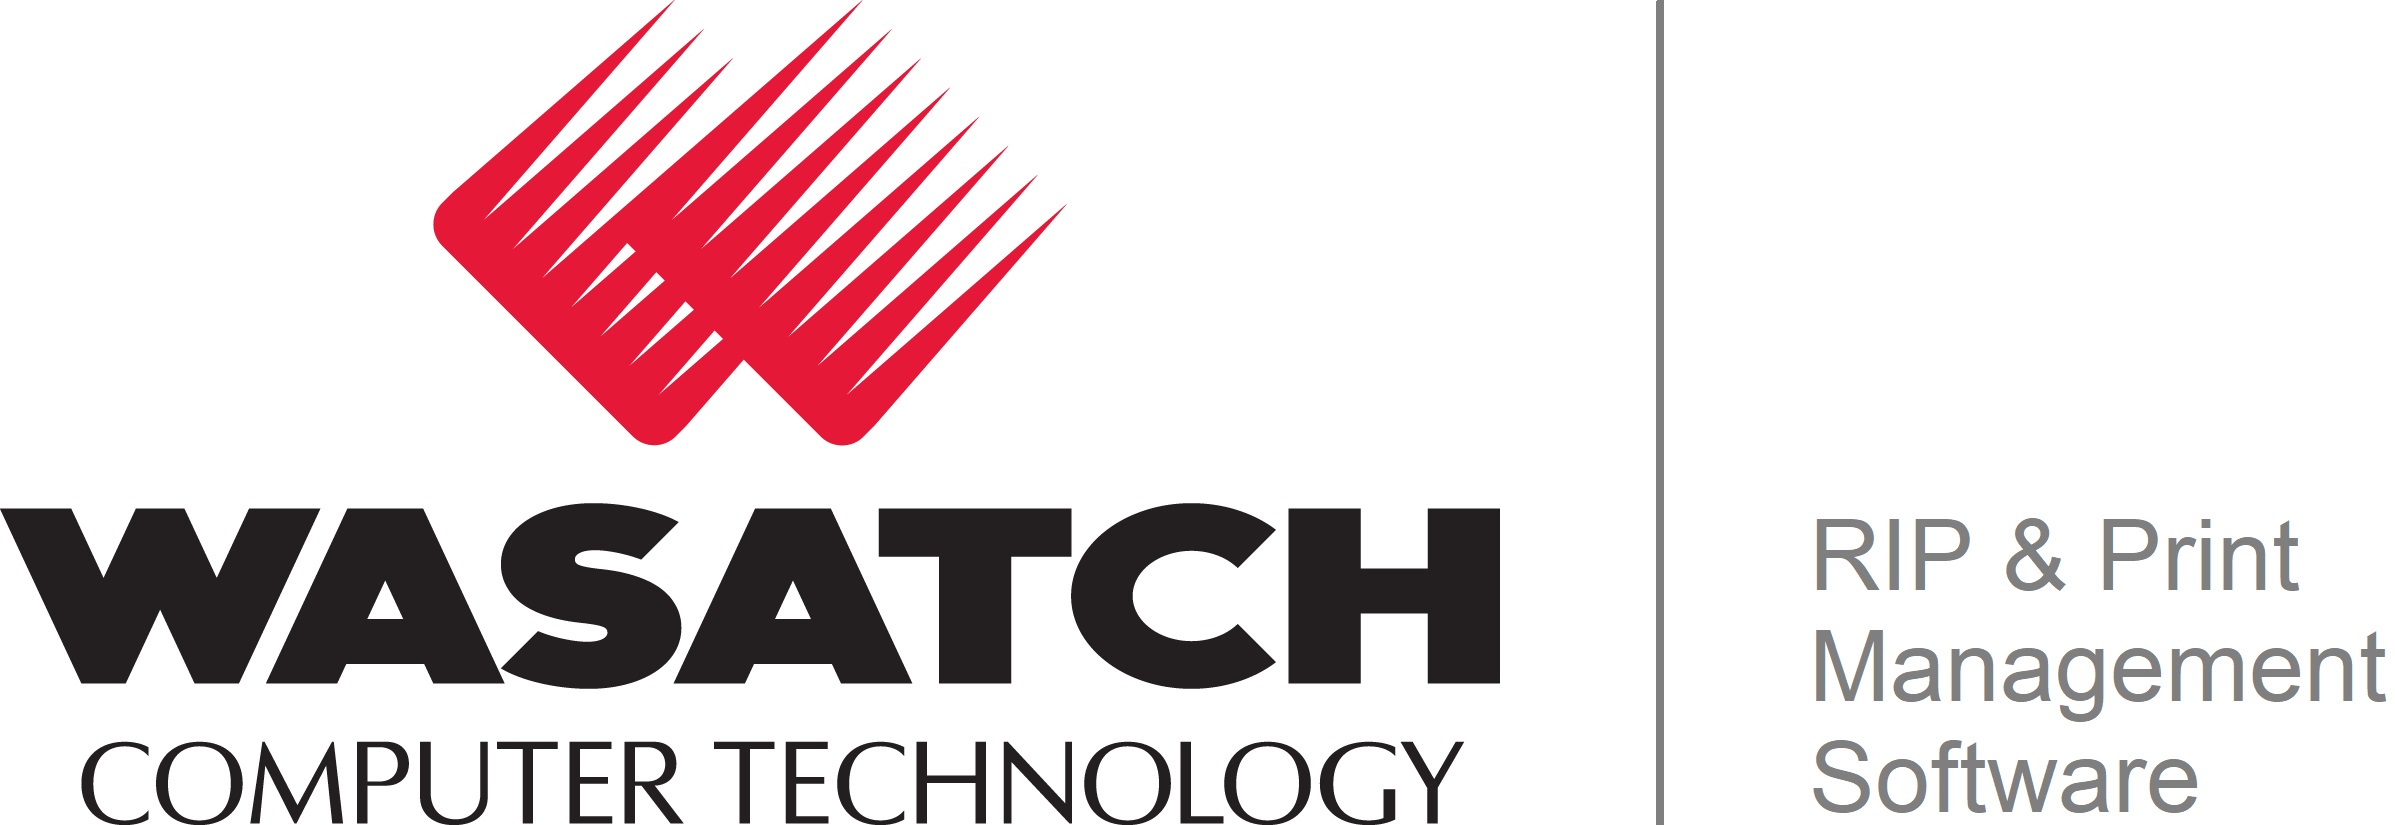 Wasatch Computer Technology, LLC